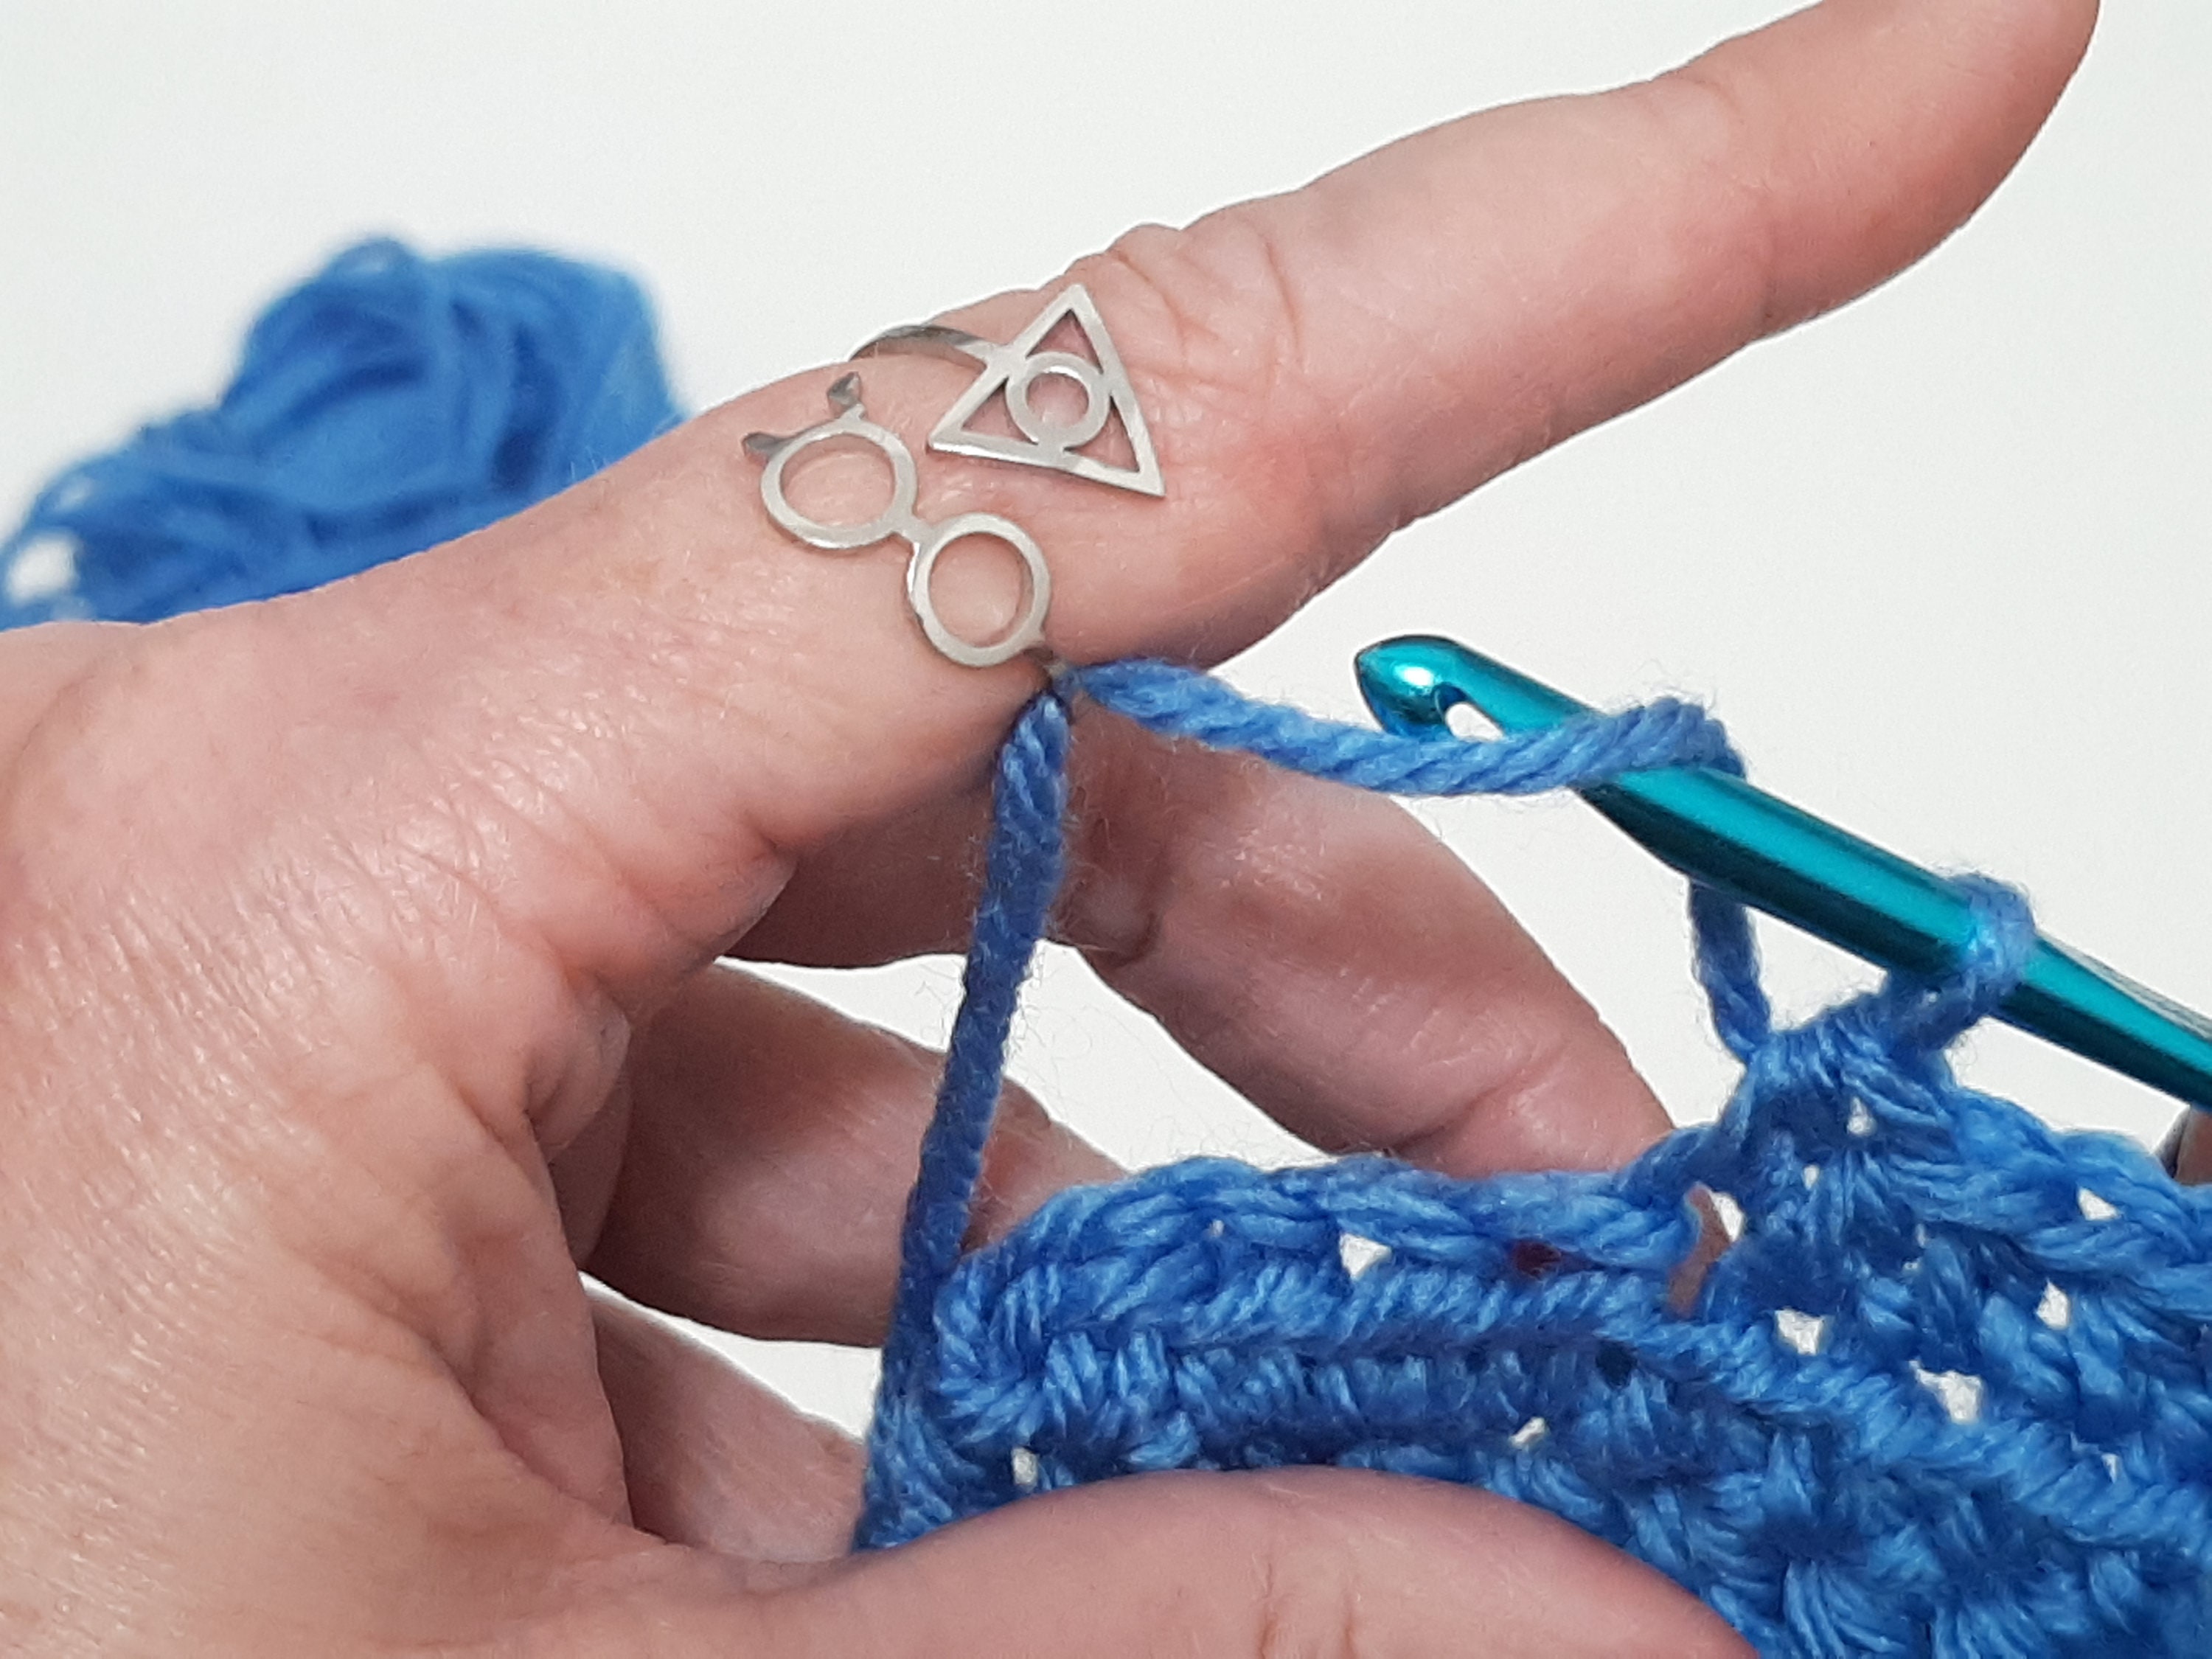 Most Popular Silver Yarn Tension Ring Peacock, Cat, Bee, Mushroom, Octopus  Style Adjustable Ring Guide Beginner Knitting Crochet Notion Gift 